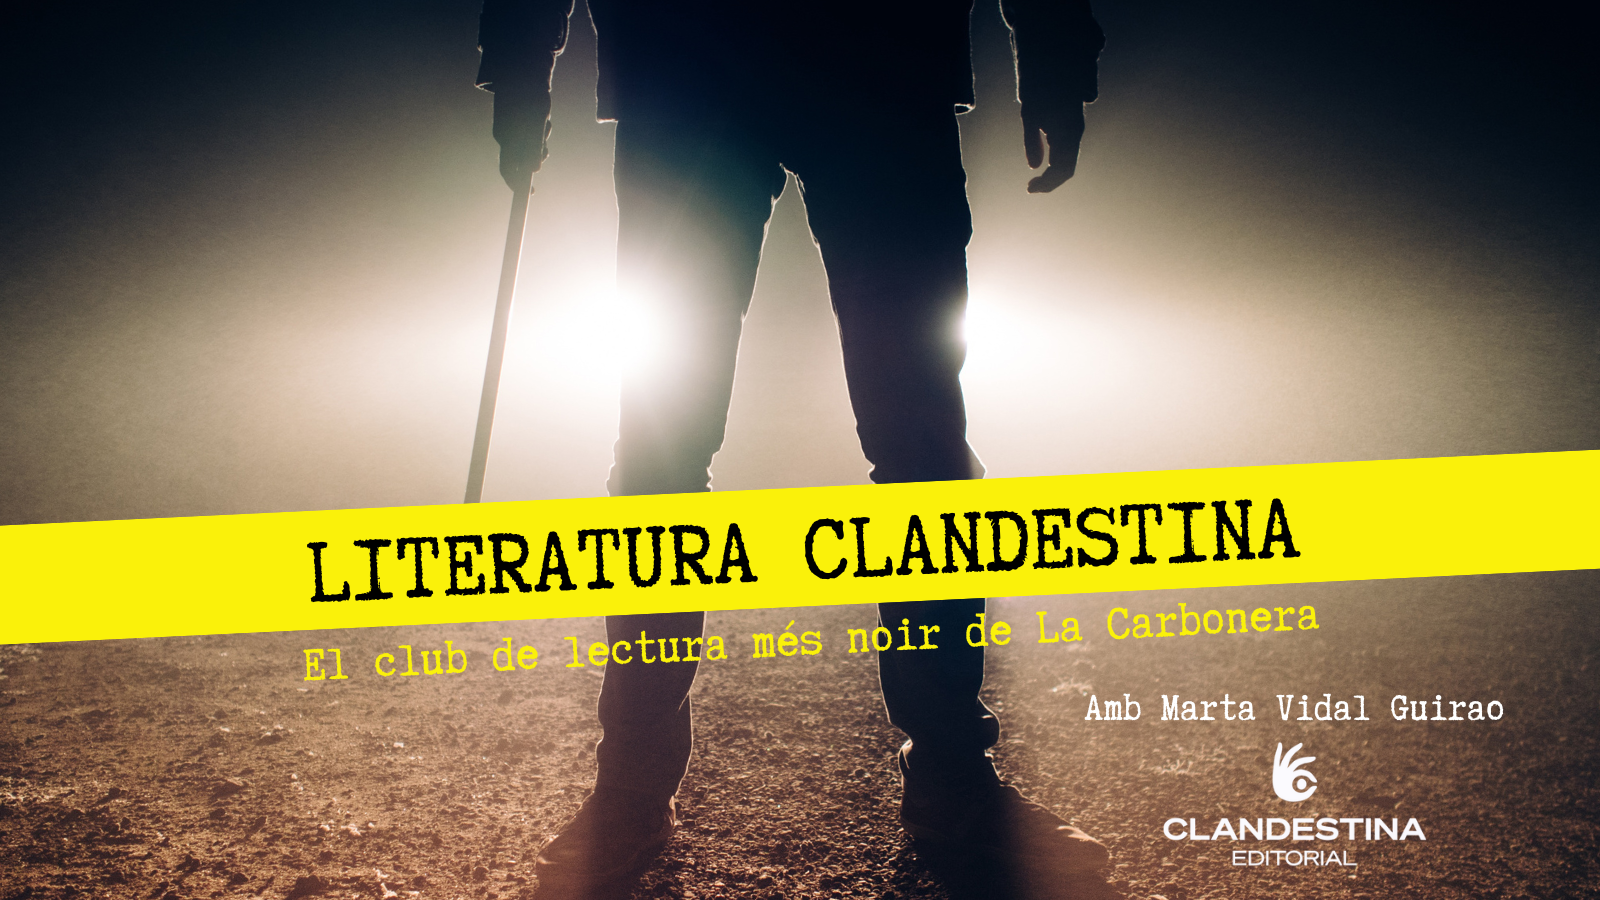 CL Clandestina - Suïcidis S.A.